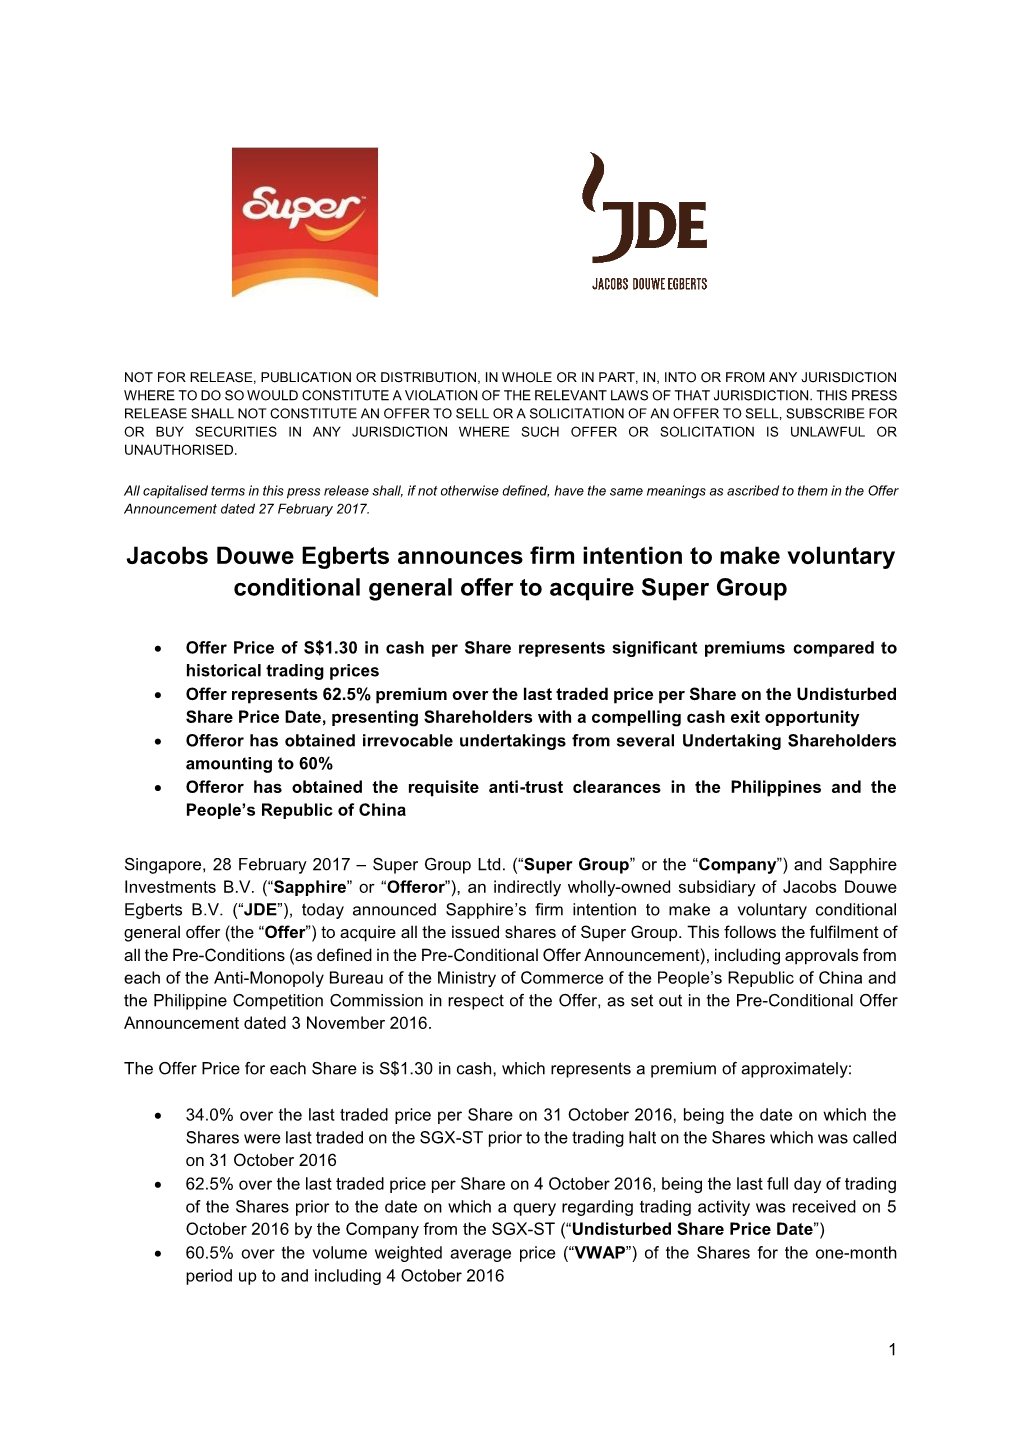 Press Release JDE Super Group Acquisition